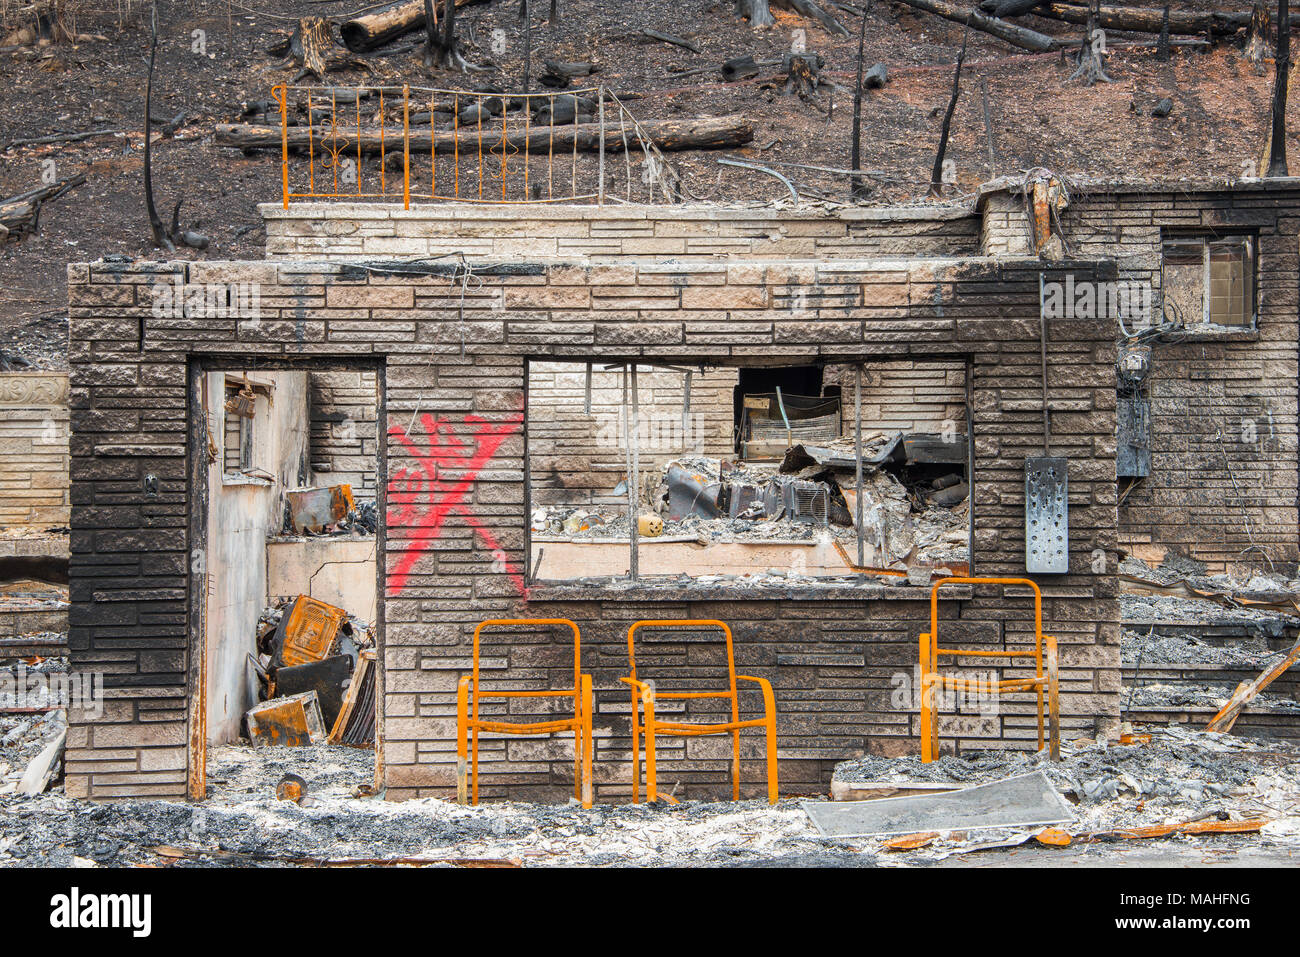 Les dégâts causés par le feu, & de Gatlinburg, Pigeon Forge, TN, États-Unis d'Amérique, par Bill Lea/Dembinsky Assoc Photo Banque D'Images